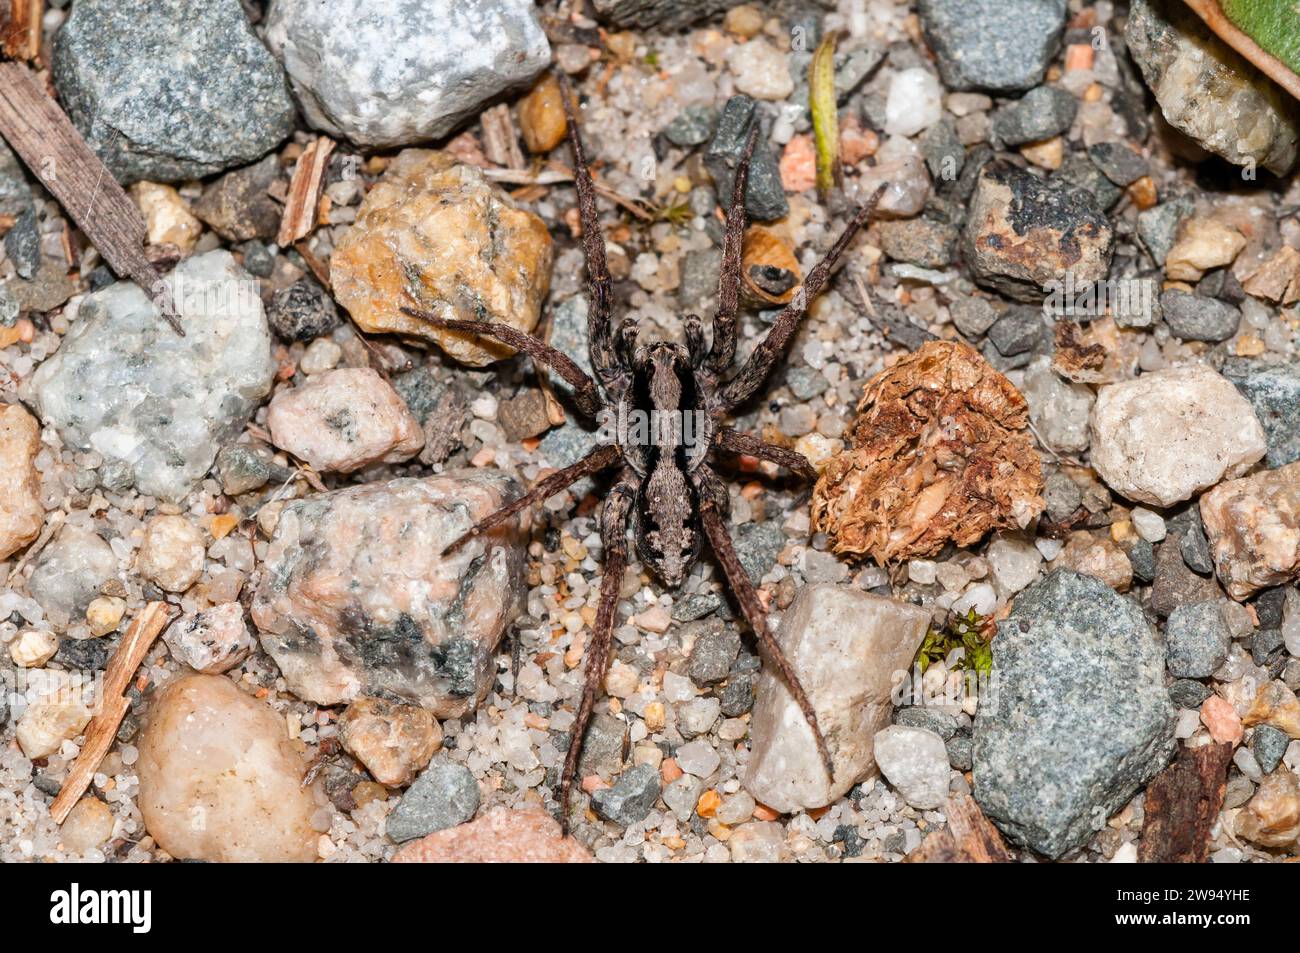 wolf spider, Venatrix sp., on the ground, Cape Conran, Australia Stock Photo